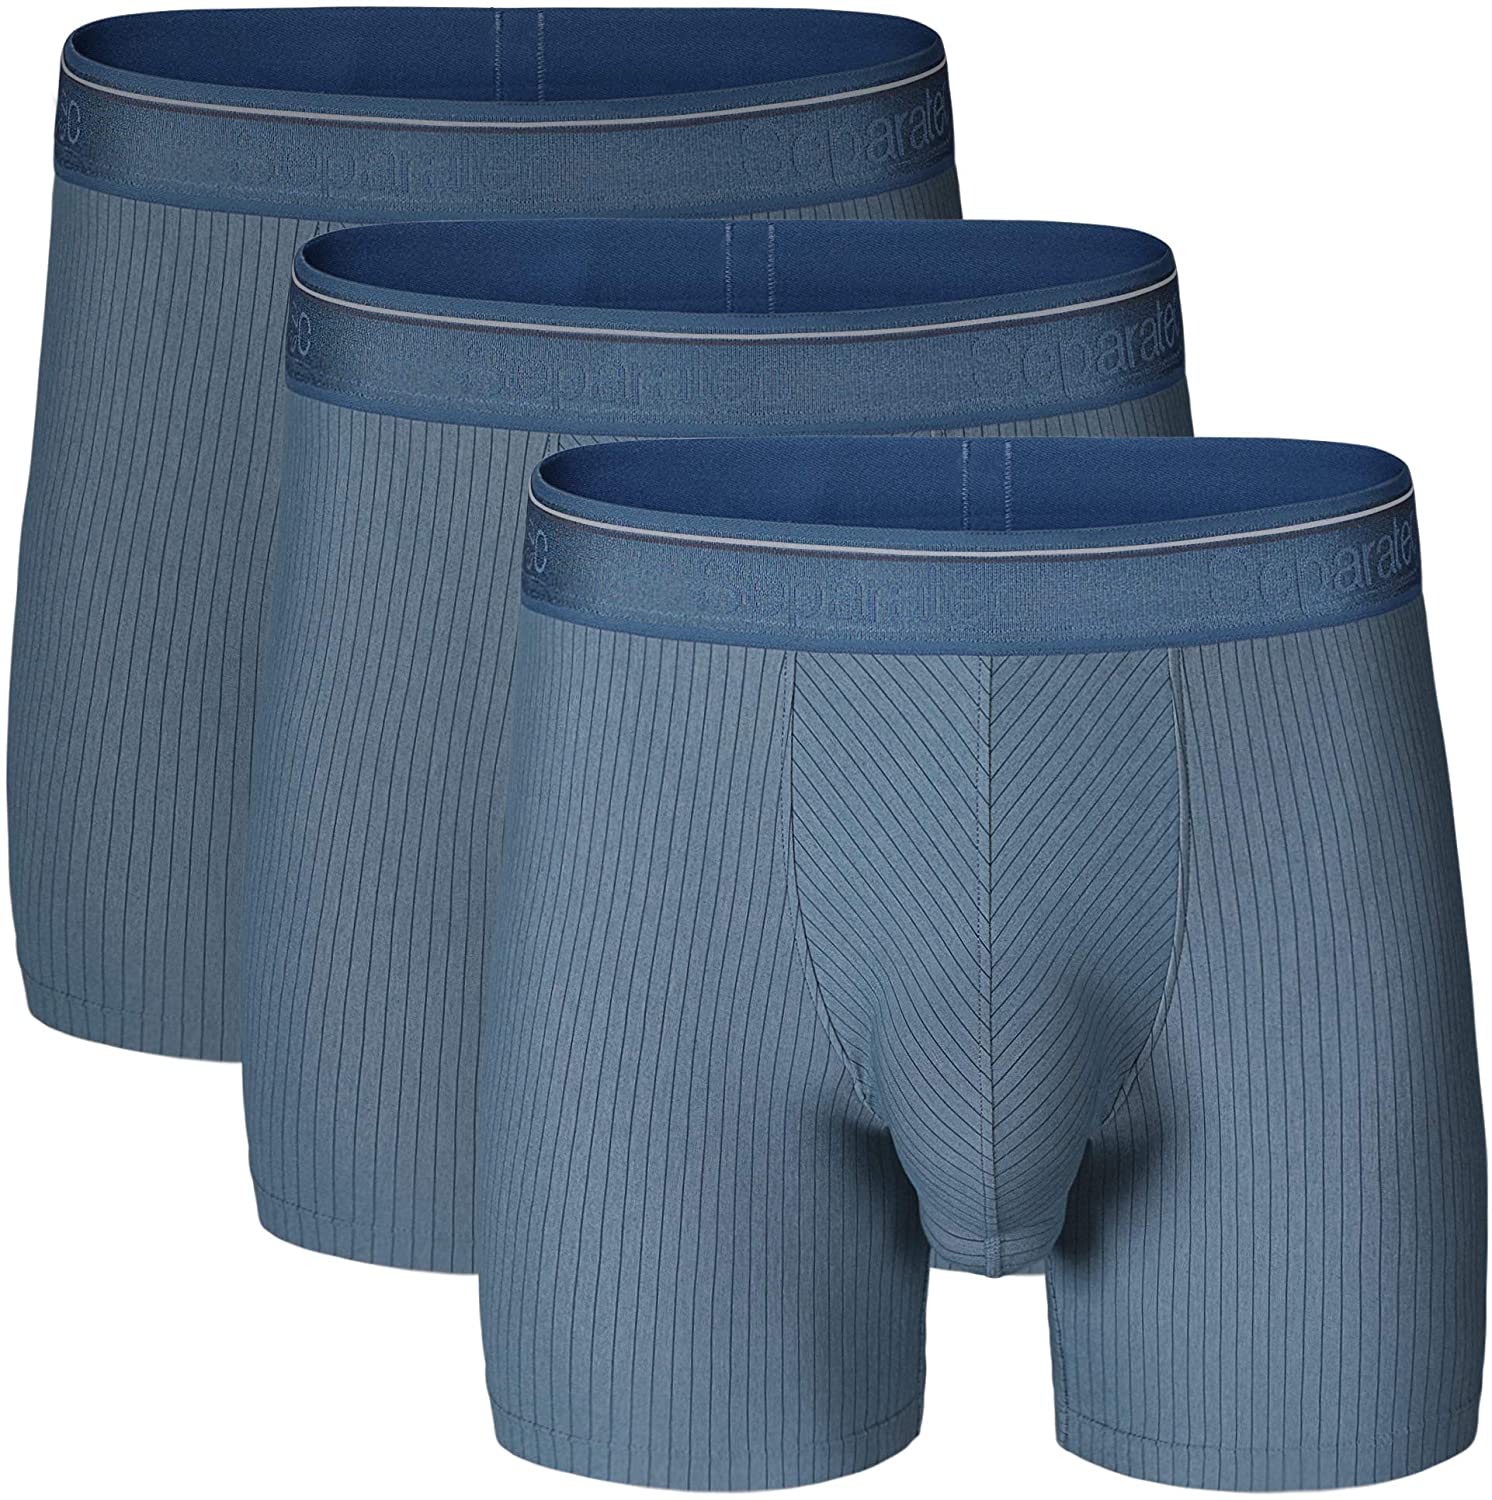 Separatec Men's Underwear Stylish Striped Pattern Smooth Cotton Boxer Briefs 3 Pack 